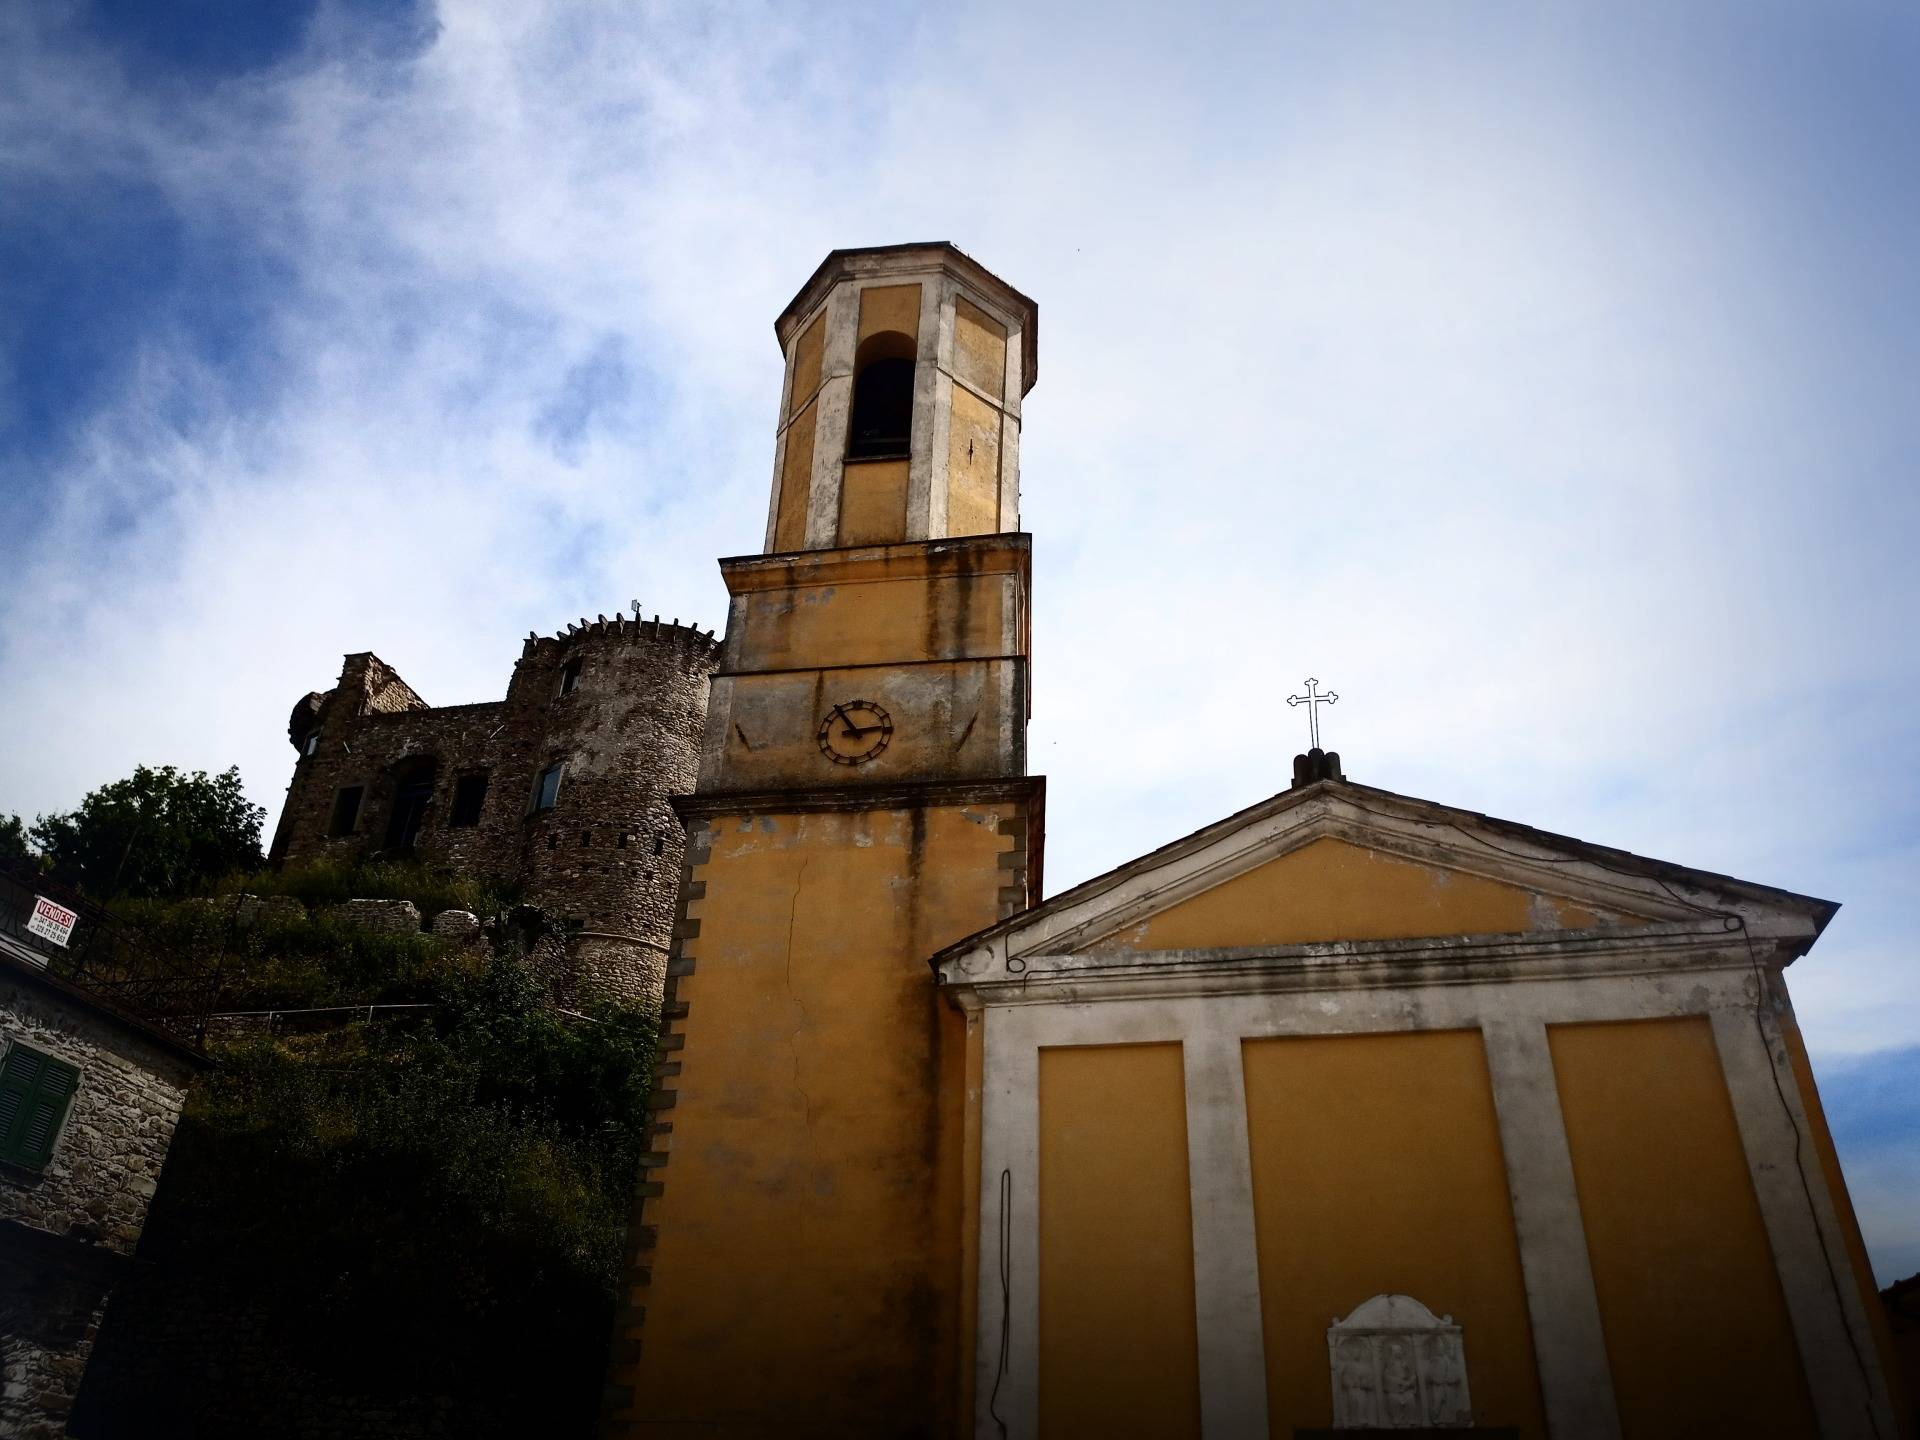 Madrignano Castle and Church